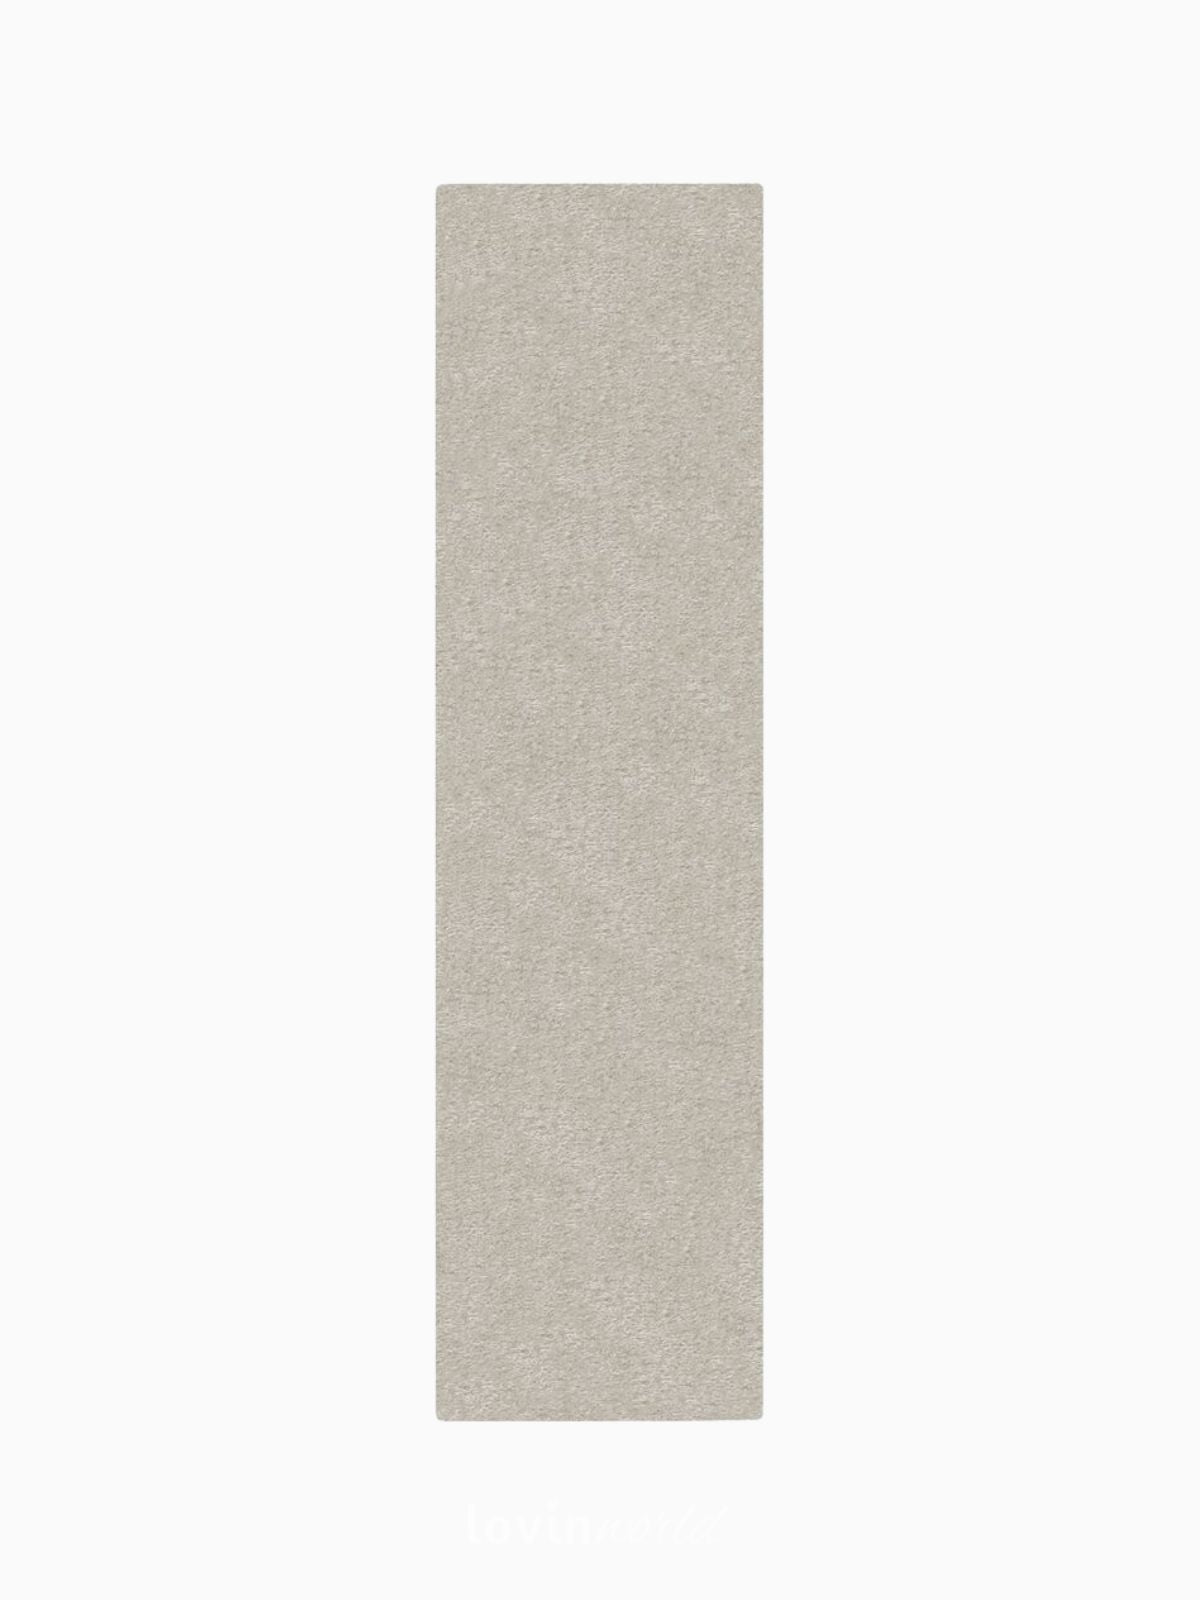 Runner shaggy Velvet in poliestere, colore avorio 60x230 cm.-1